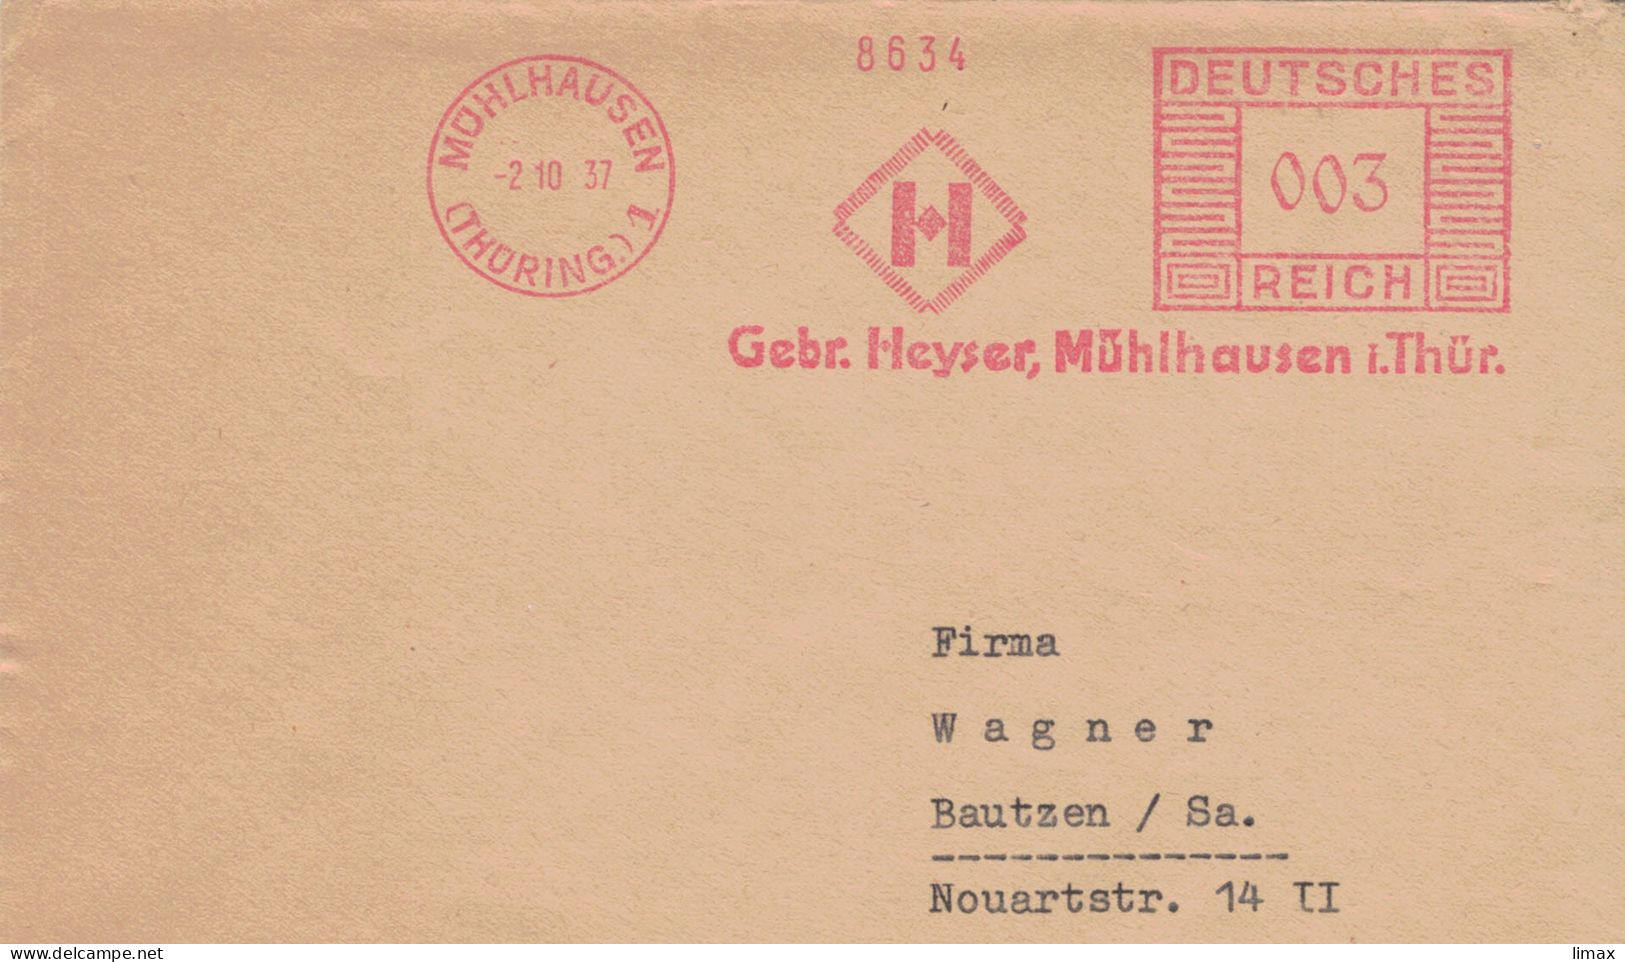 Francotyp C - Gebrüder Heyser Mühlhausen Thüringen 1937 > Bautzen 8634 - Frankeermachines (EMA)